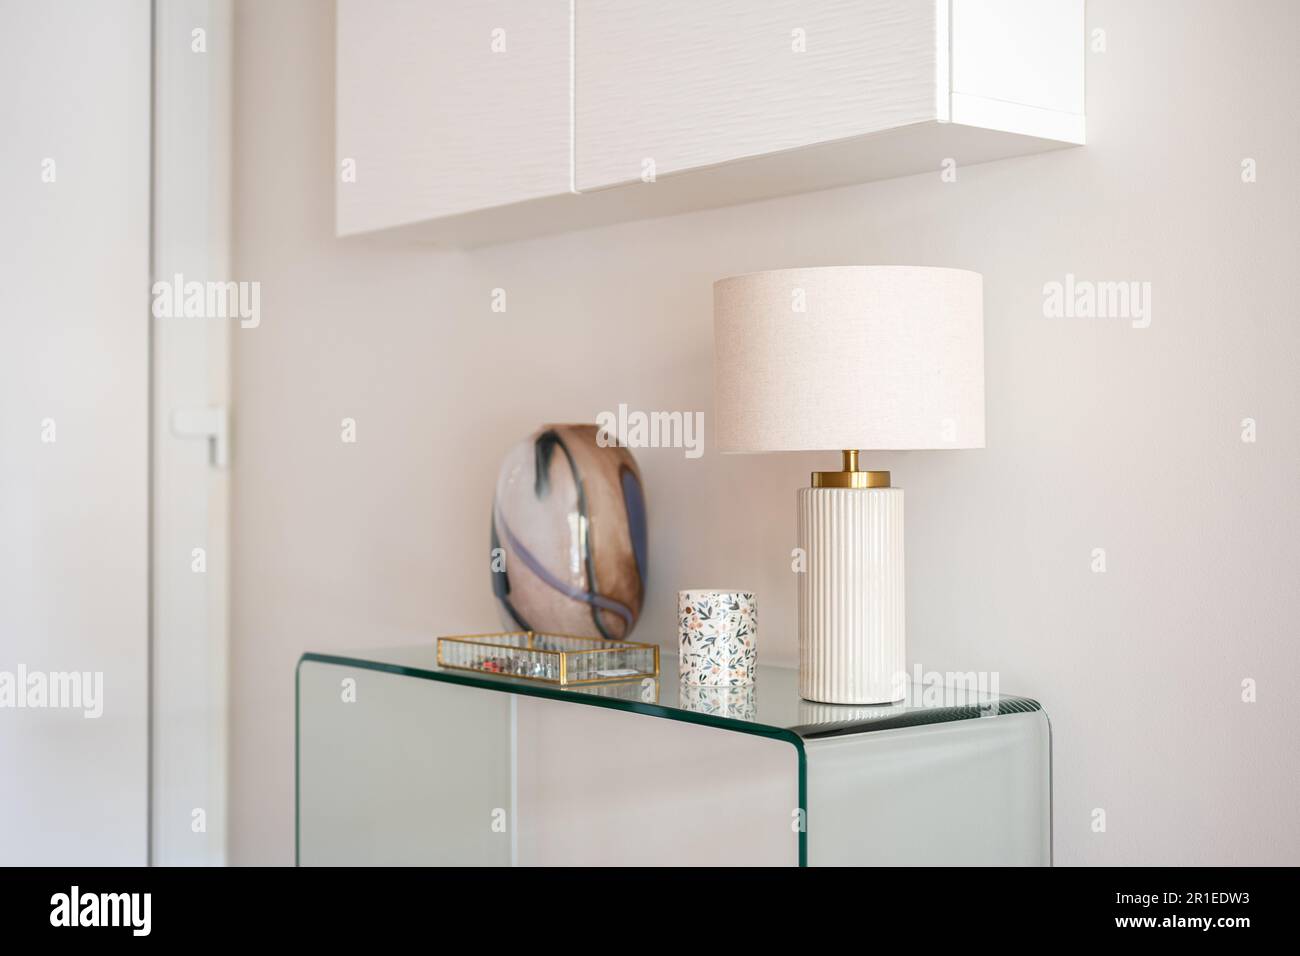 Vue rapprochée d'une console en verre avec accessoires et d'une lampe avec une armoire blanche suspendue dans le couloir ou le salon. Décoration intérieure moderne Banque D'Images